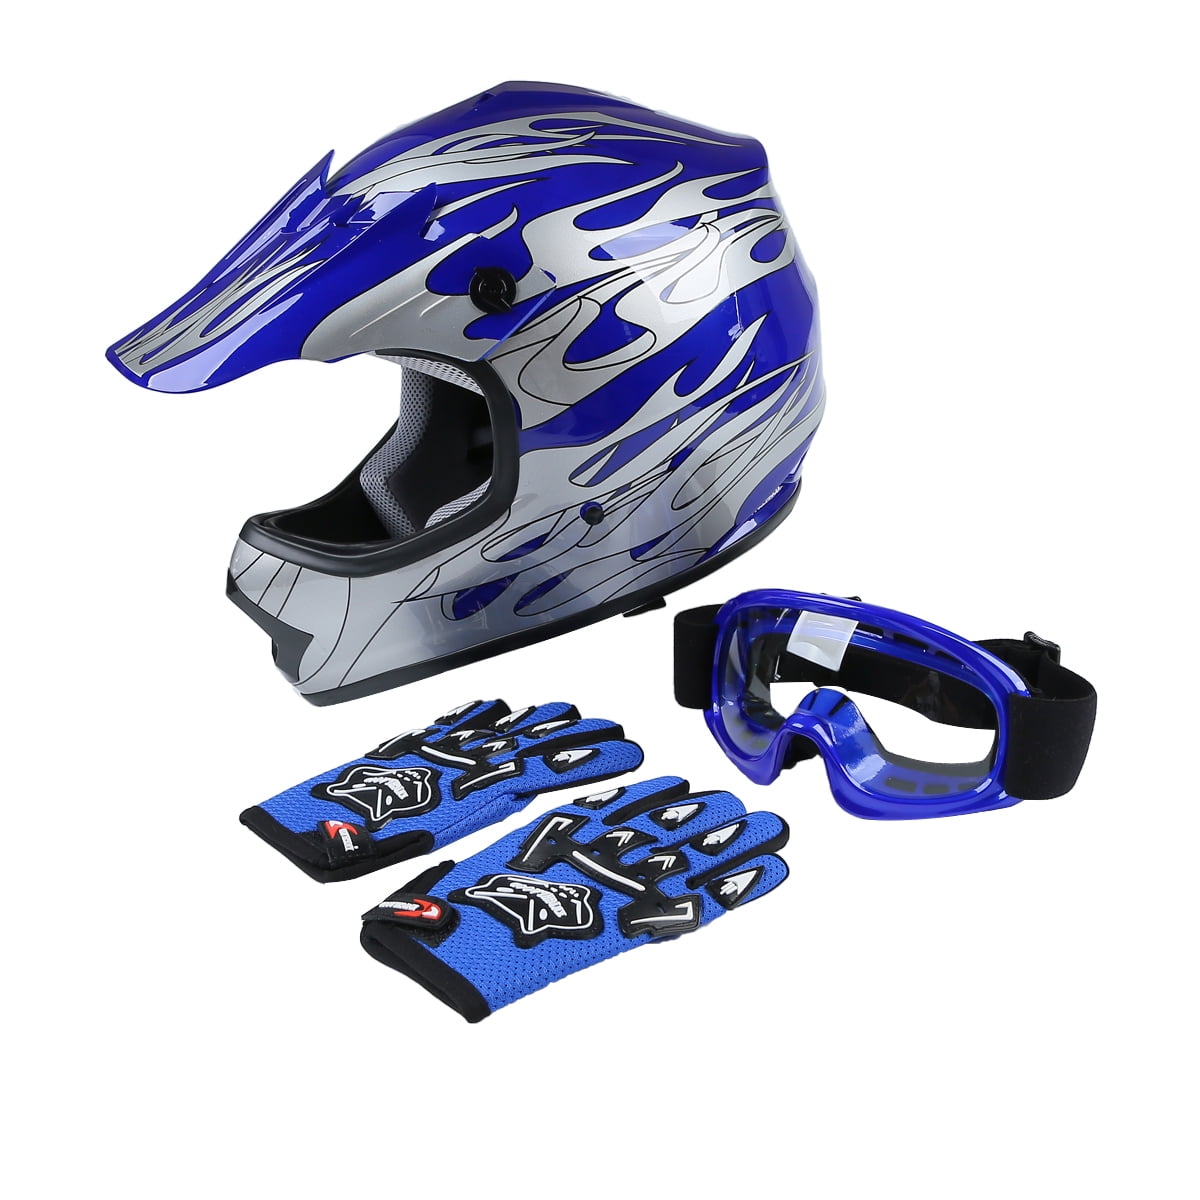 SLMOTO DOT Approved Youth Kids Helmet Offroad Street Motorcycle Helmet Dirt Bike Motocross ATV Blue Flame Helmet+Goggles+Gloves,Medium 